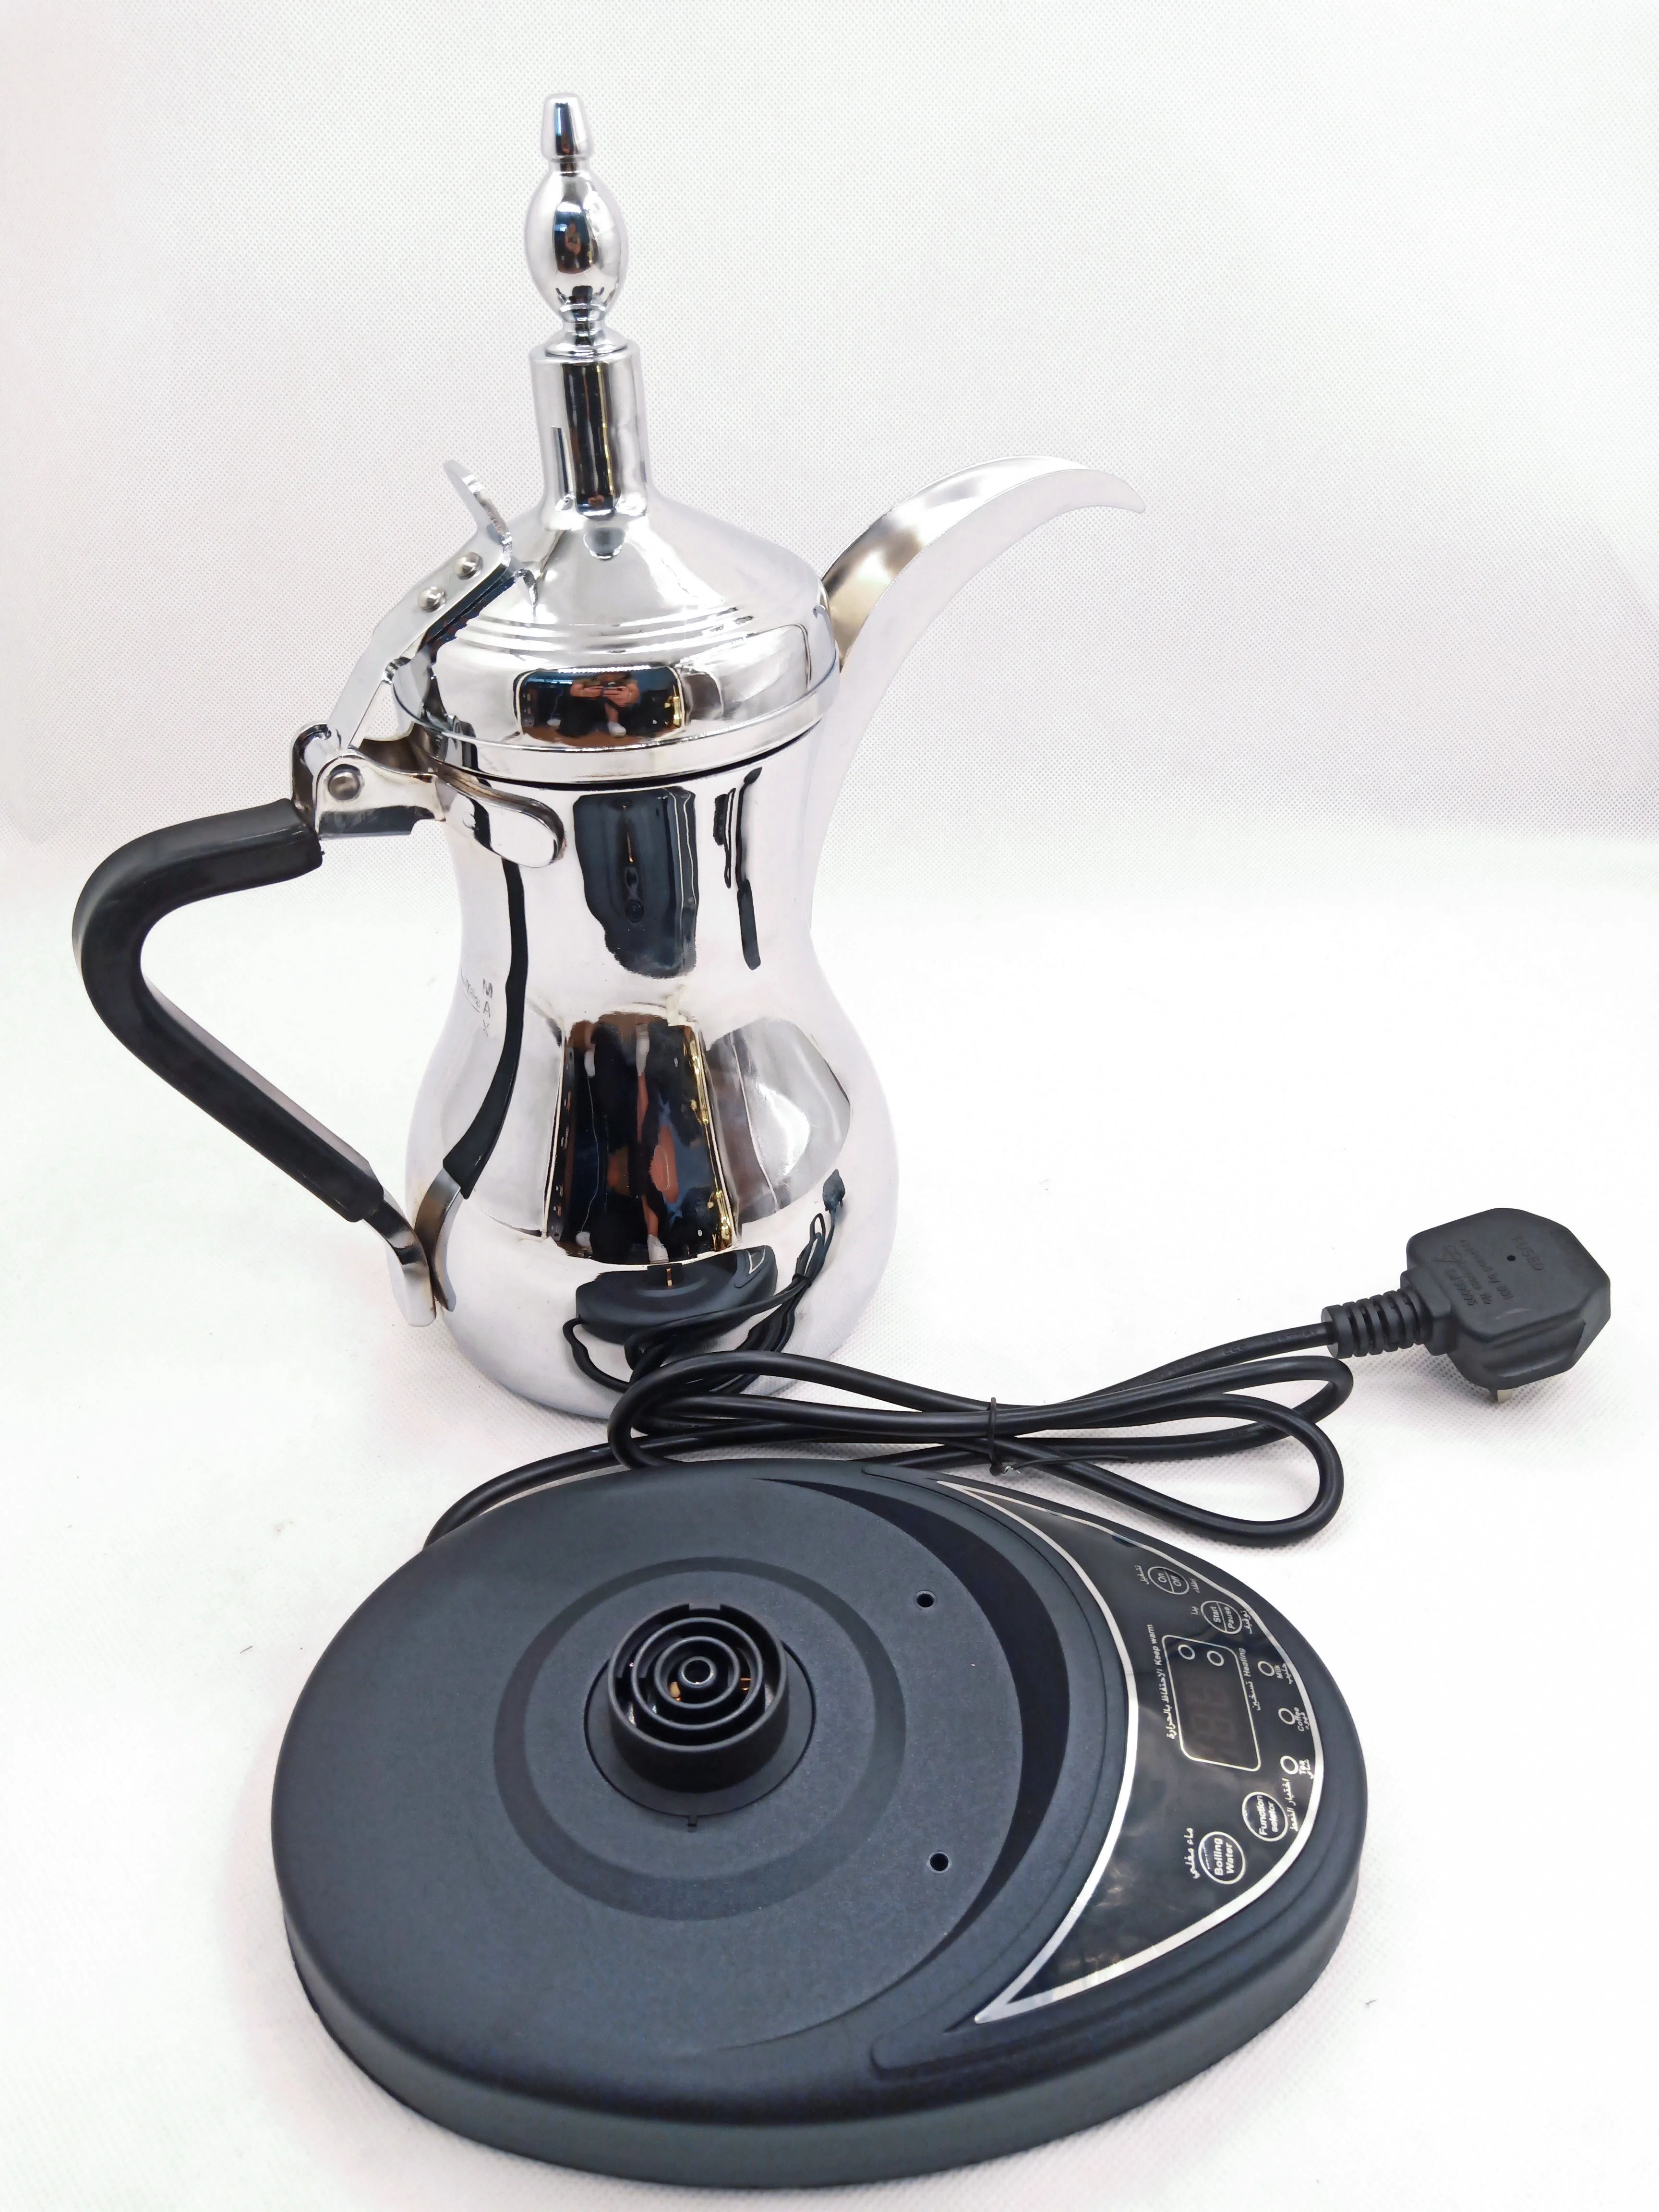 Качественный кофейник, арабский даллах, электрический чайник из нержавеющей стали, даллах